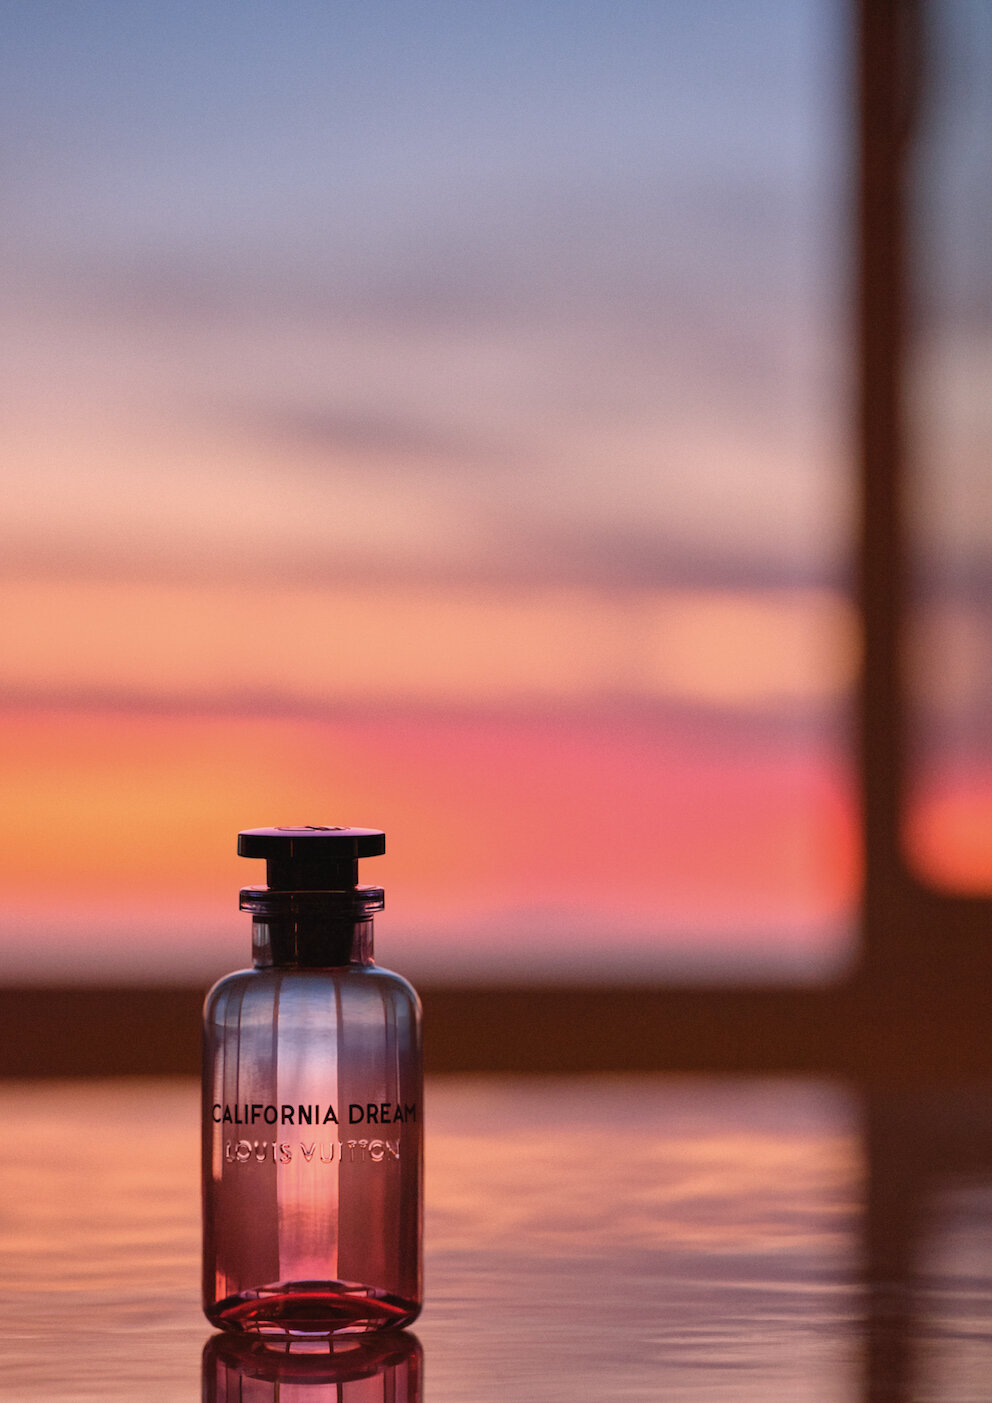 Louis Vuitton CALIFORNIA DREAM Eau De Parfum Perfume Spray TRAVEL